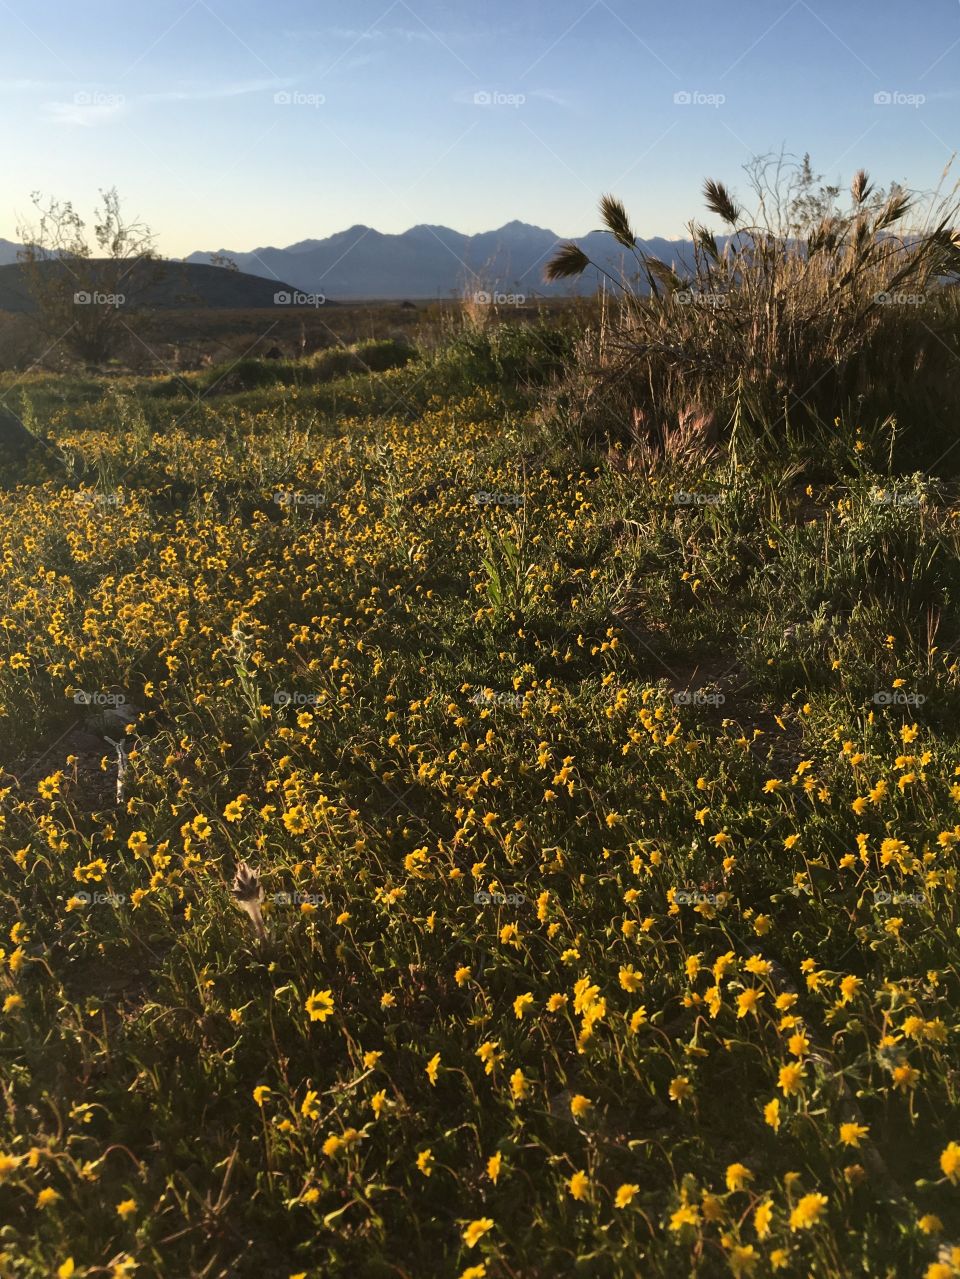 MojAve Desert - spring flowers 